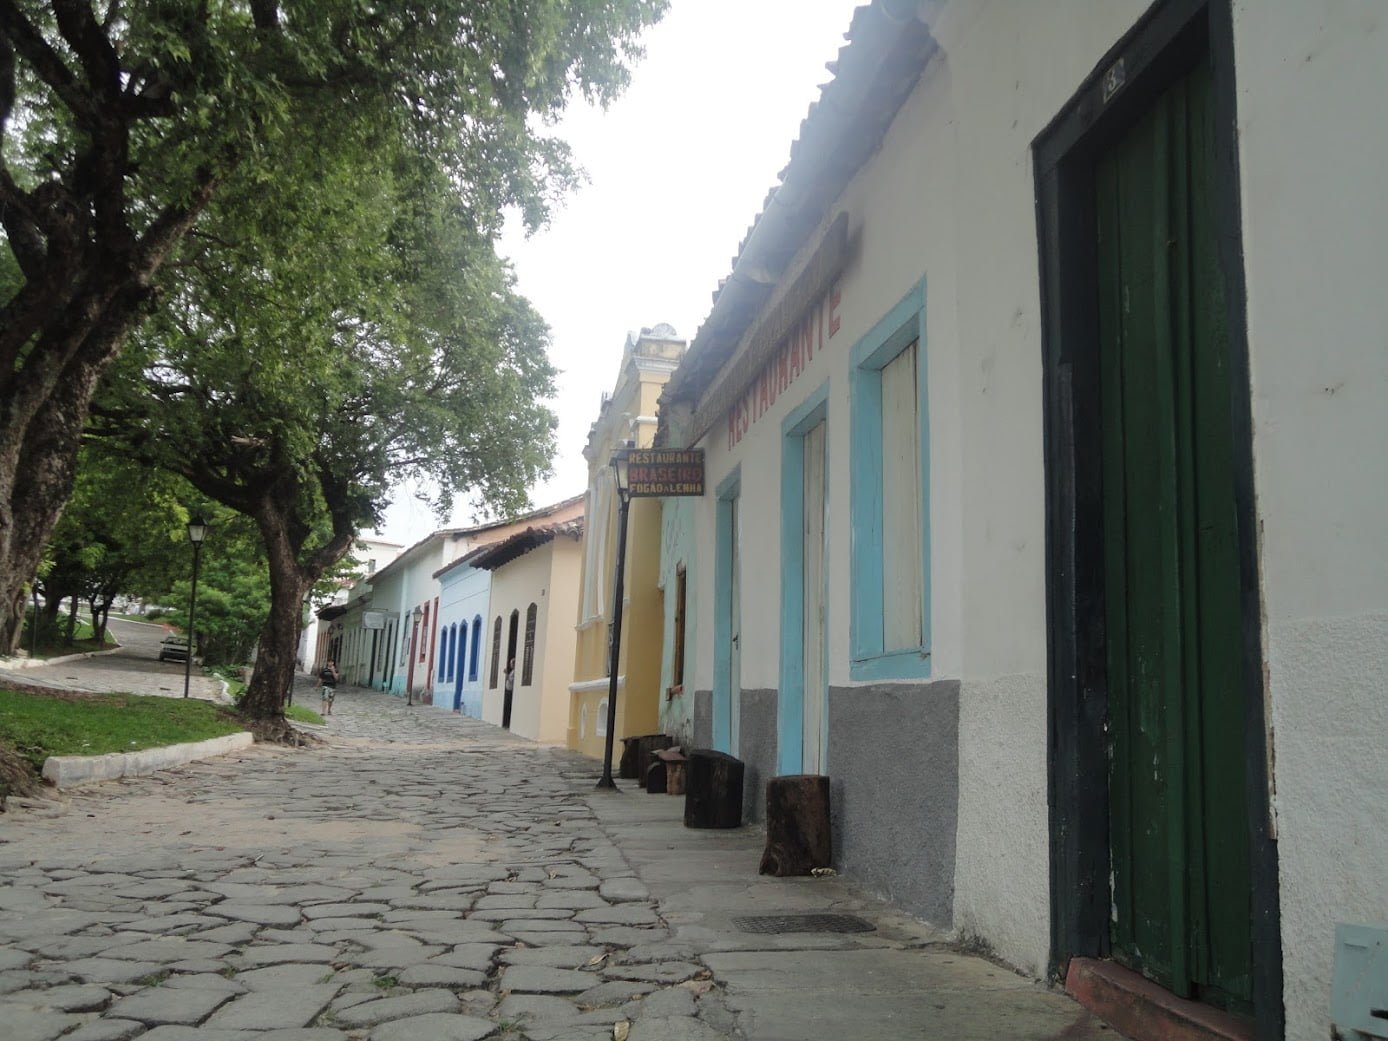 Casas antigas de Goiás Velho (Cidade de Goiás)